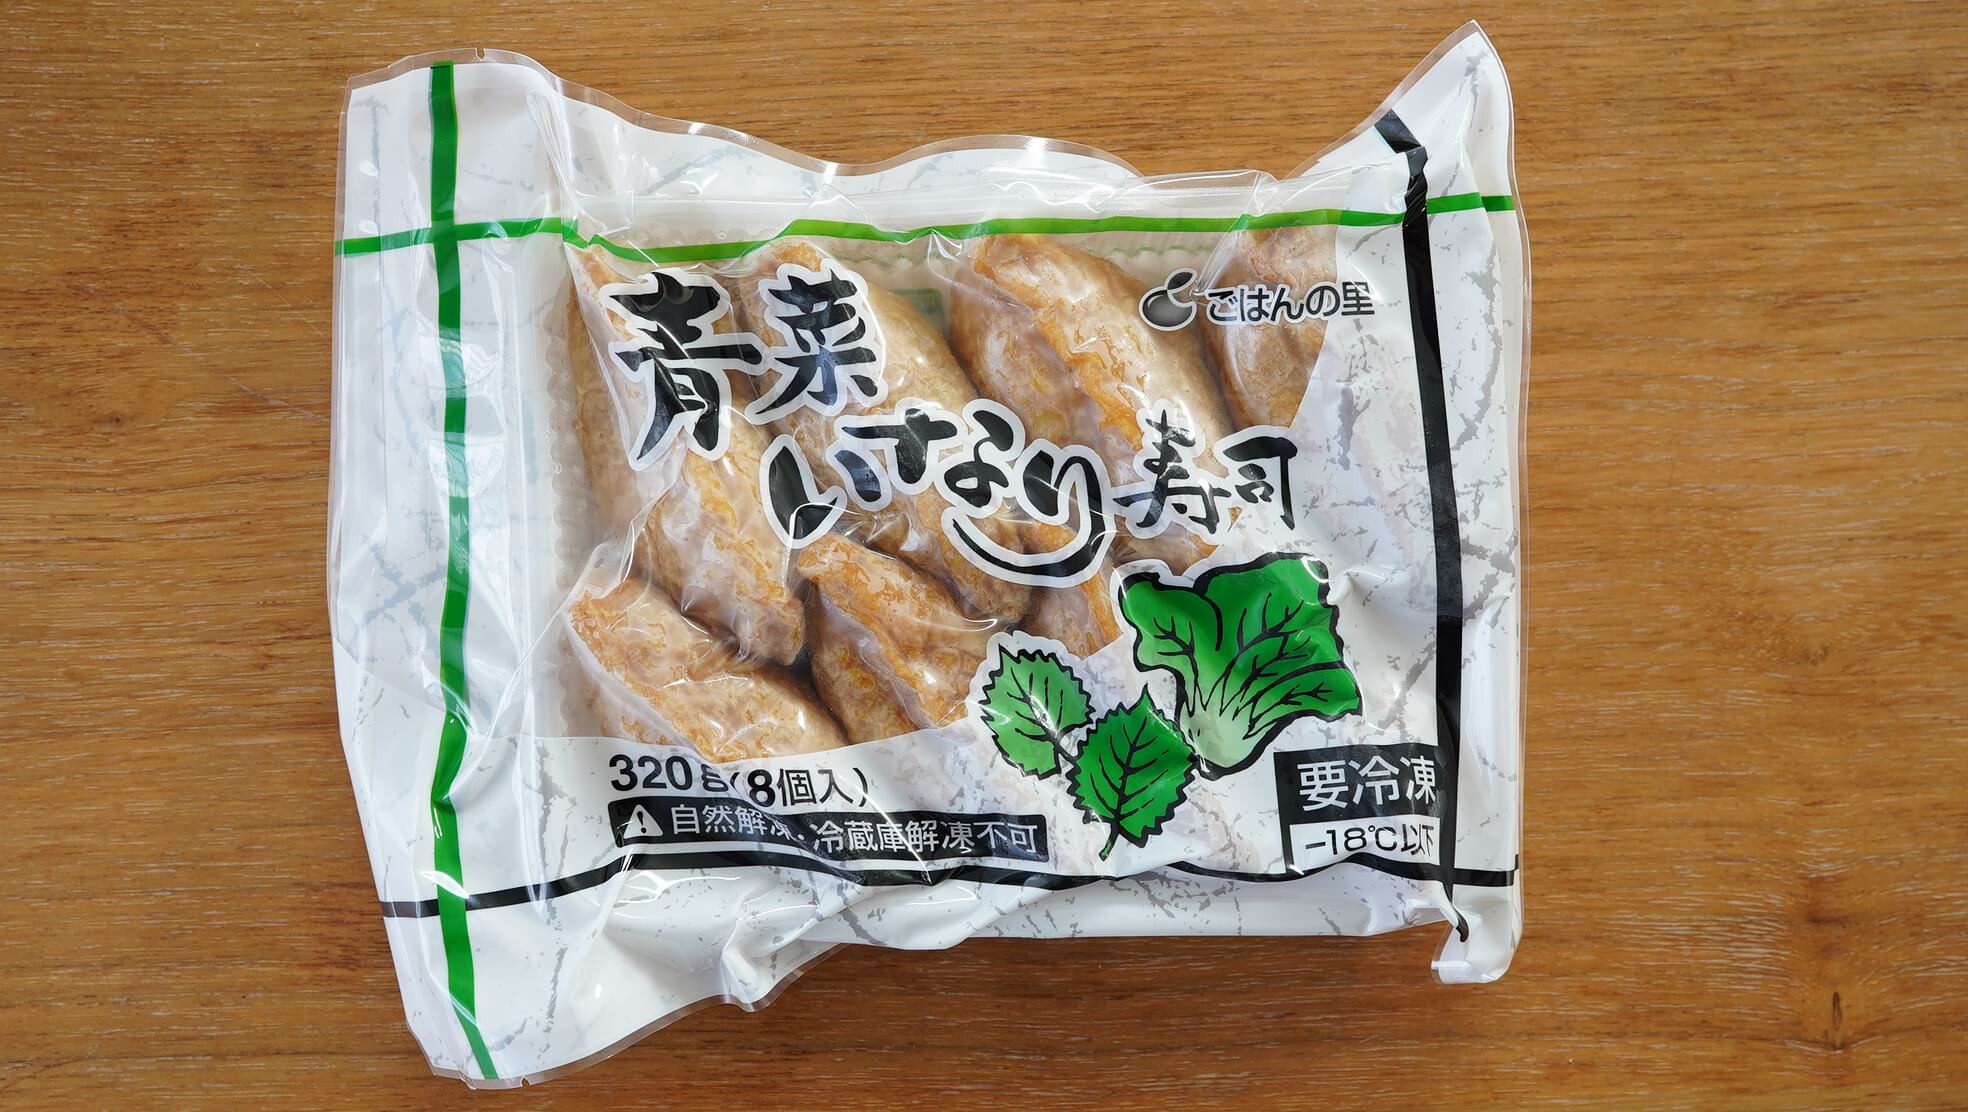 「ごはんの里」の冷凍食品「青菜いなり寿司」のパッケージ写真